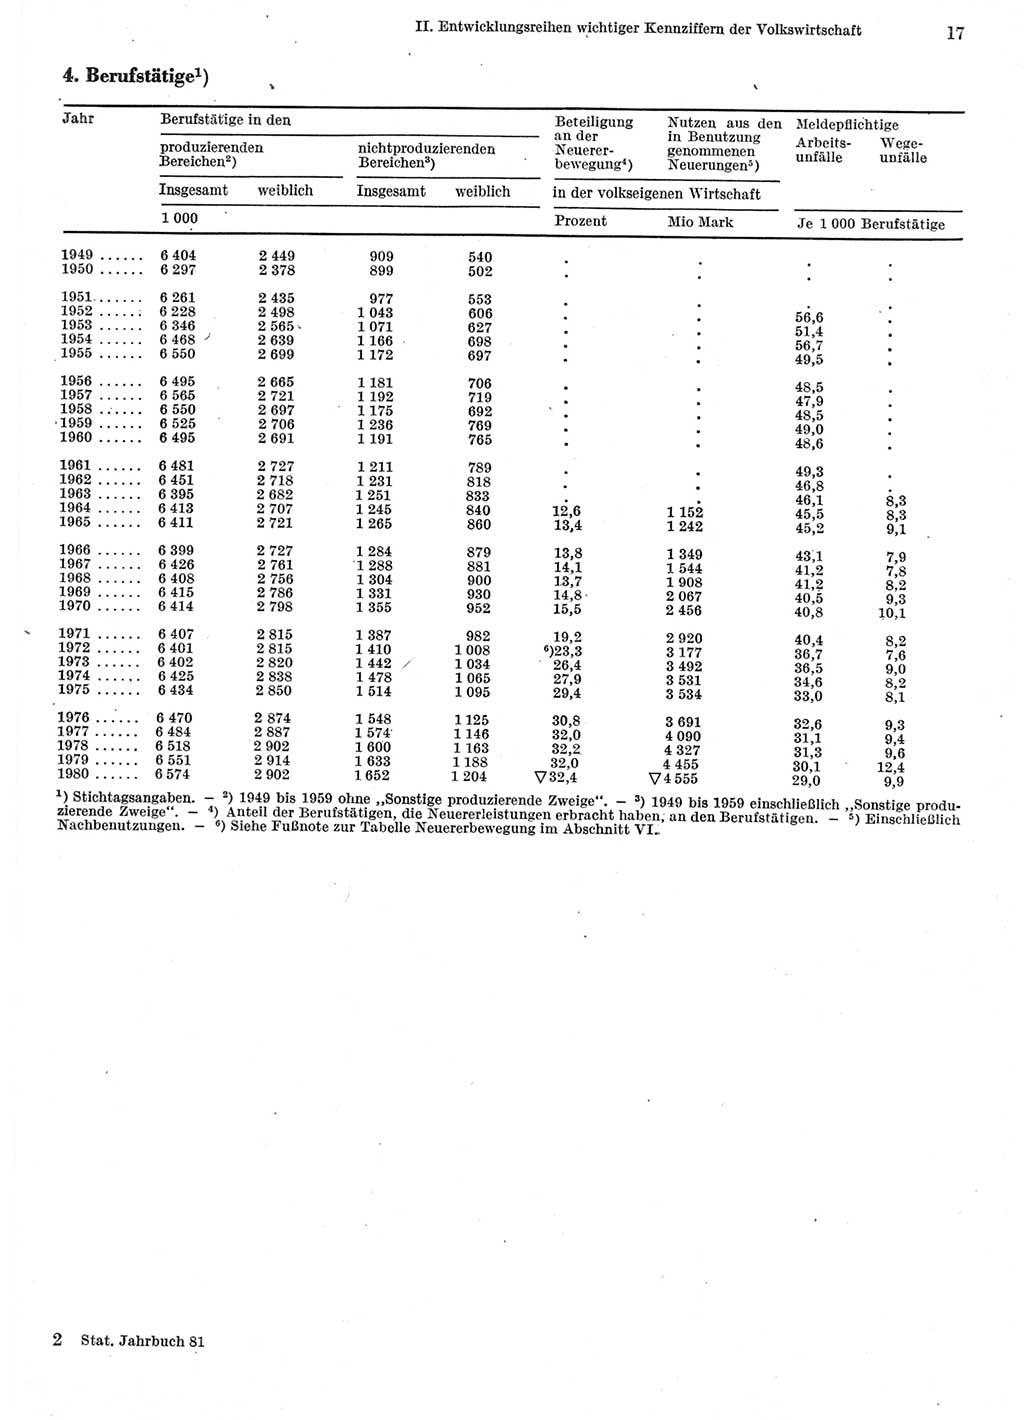 Statistisches Jahrbuch der Deutschen Demokratischen Republik (DDR) 1981, Seite 17 (Stat. Jb. DDR 1981, S. 17)